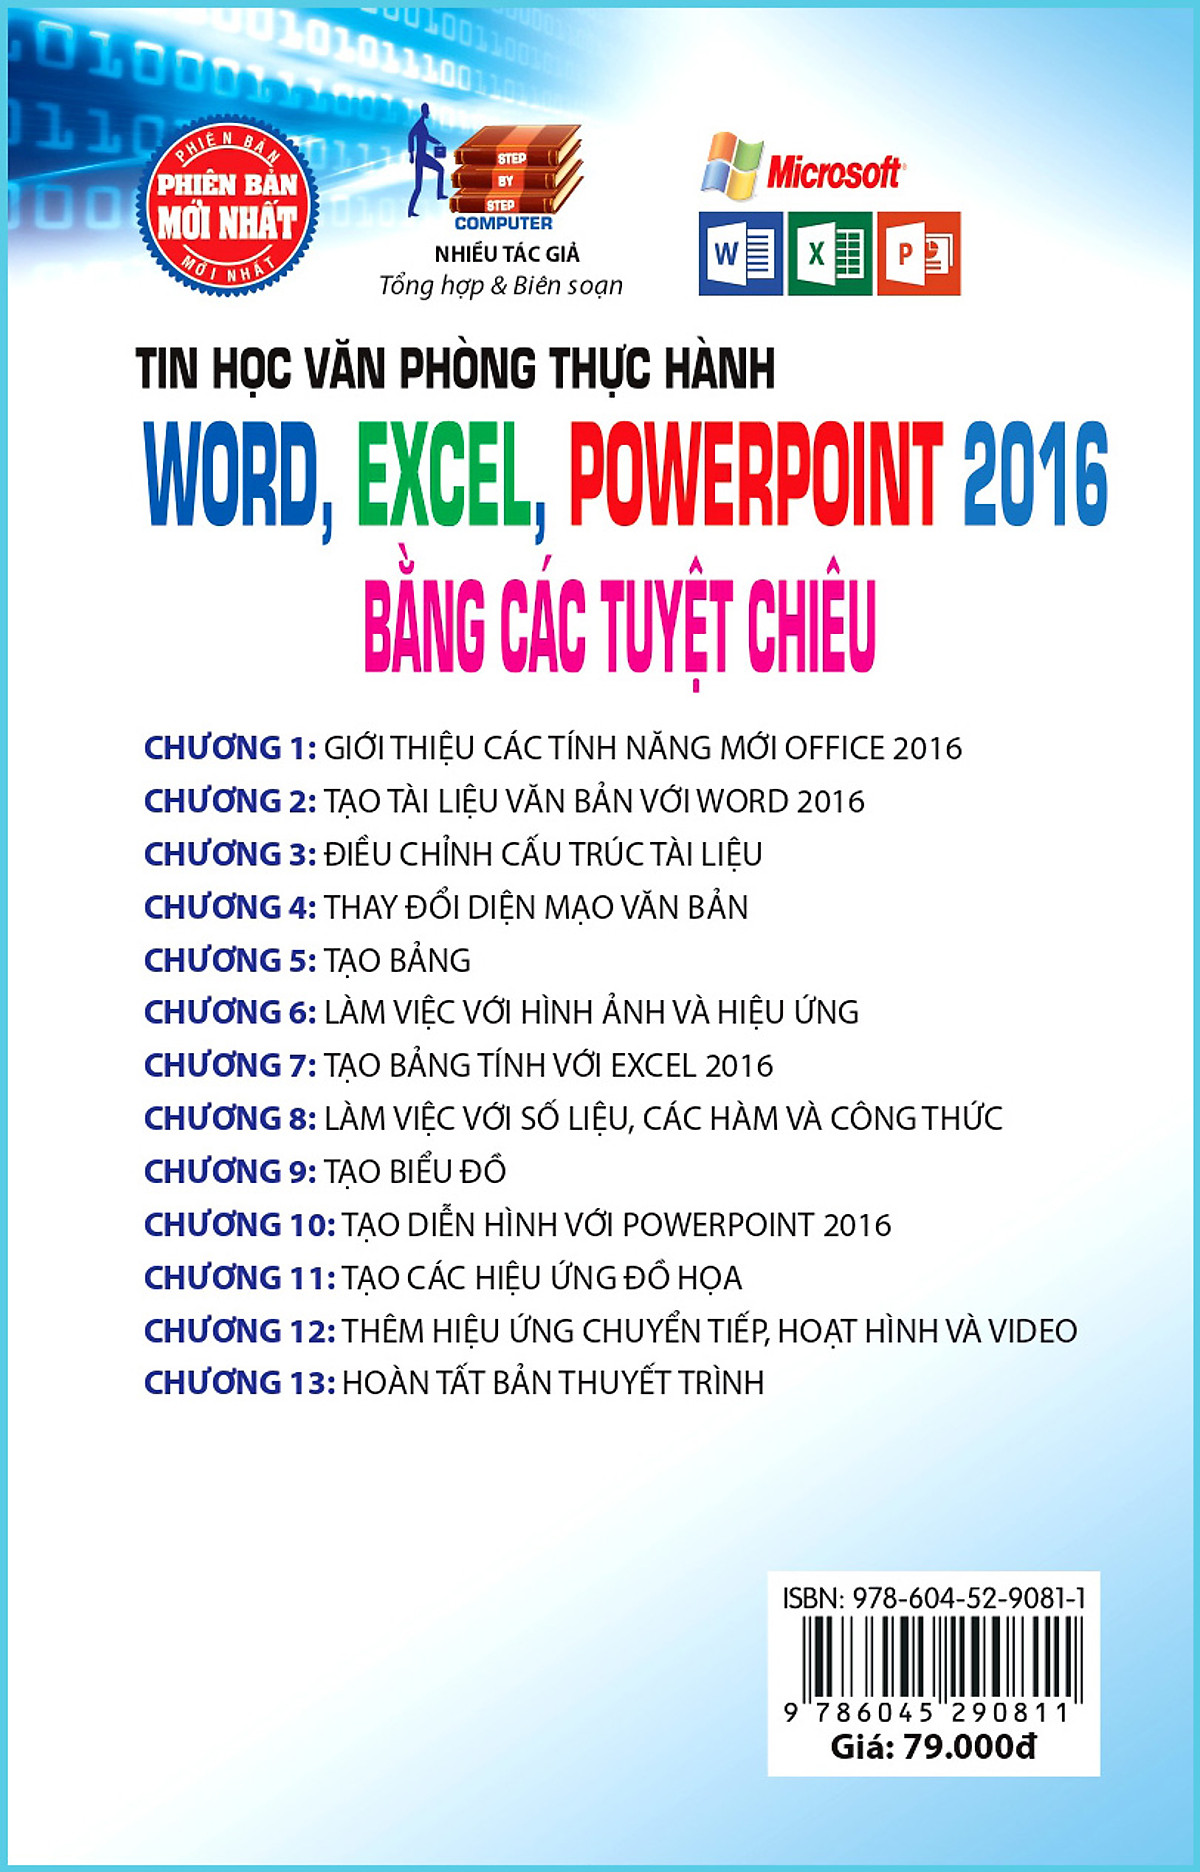 Thực Hành Microsoft Word - Excel - PowerPoint 2016 Bằng Các Tuyệt Chiêu (Sách kèm theo CD Bài tập) (Tái bản năm 2020)